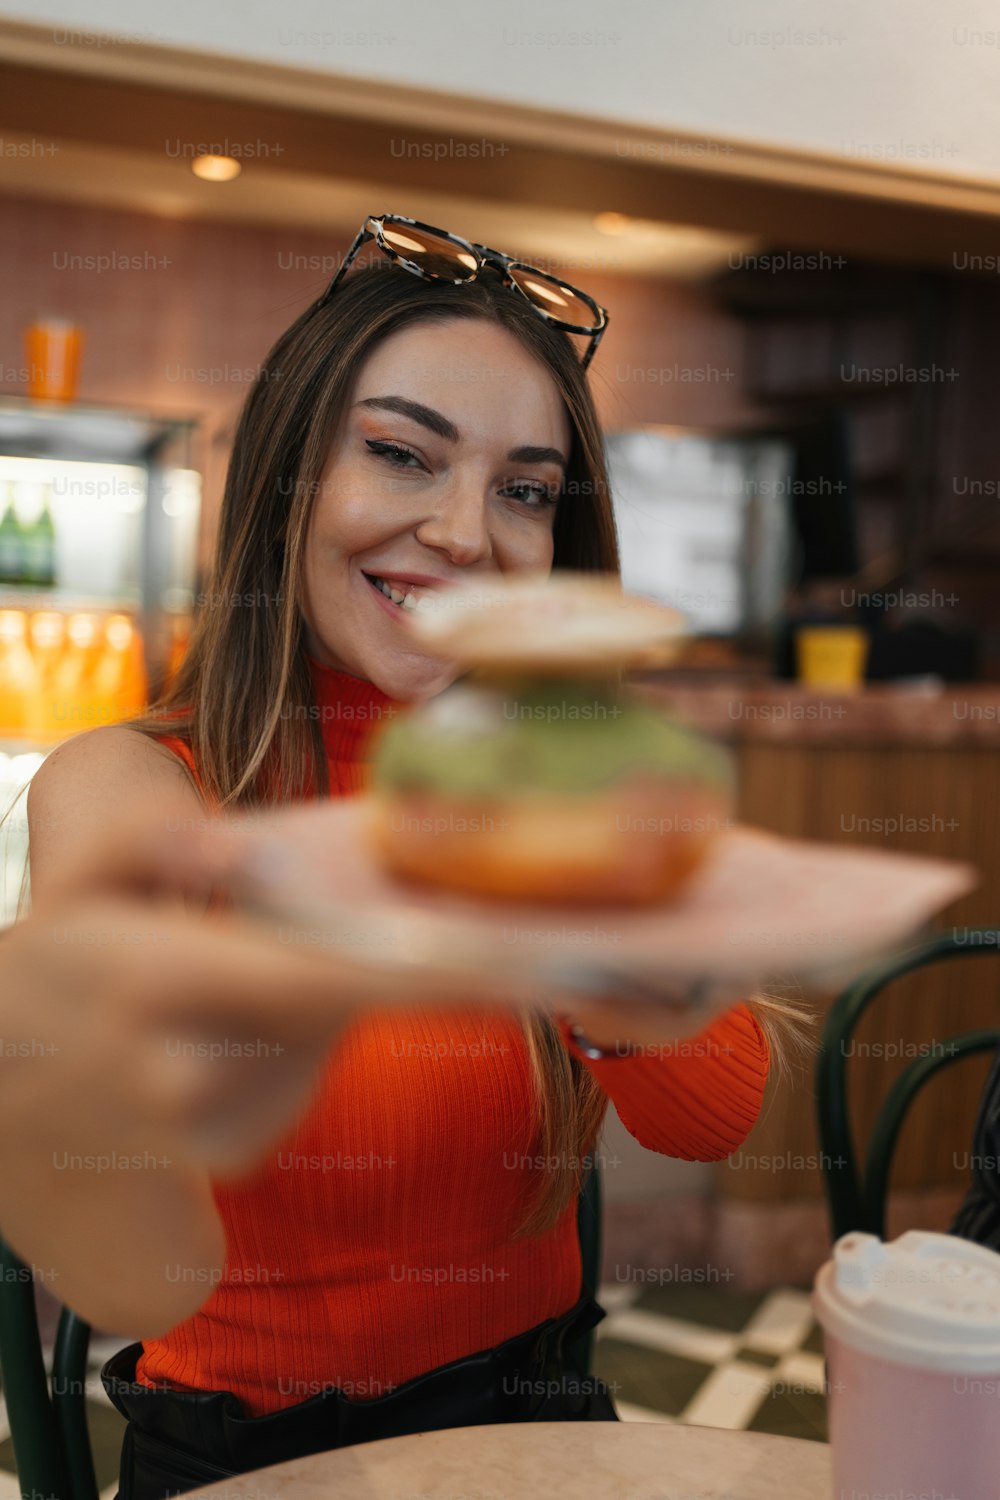 Eine Frau, die einen Teller mit einem Sandwich darauf hält